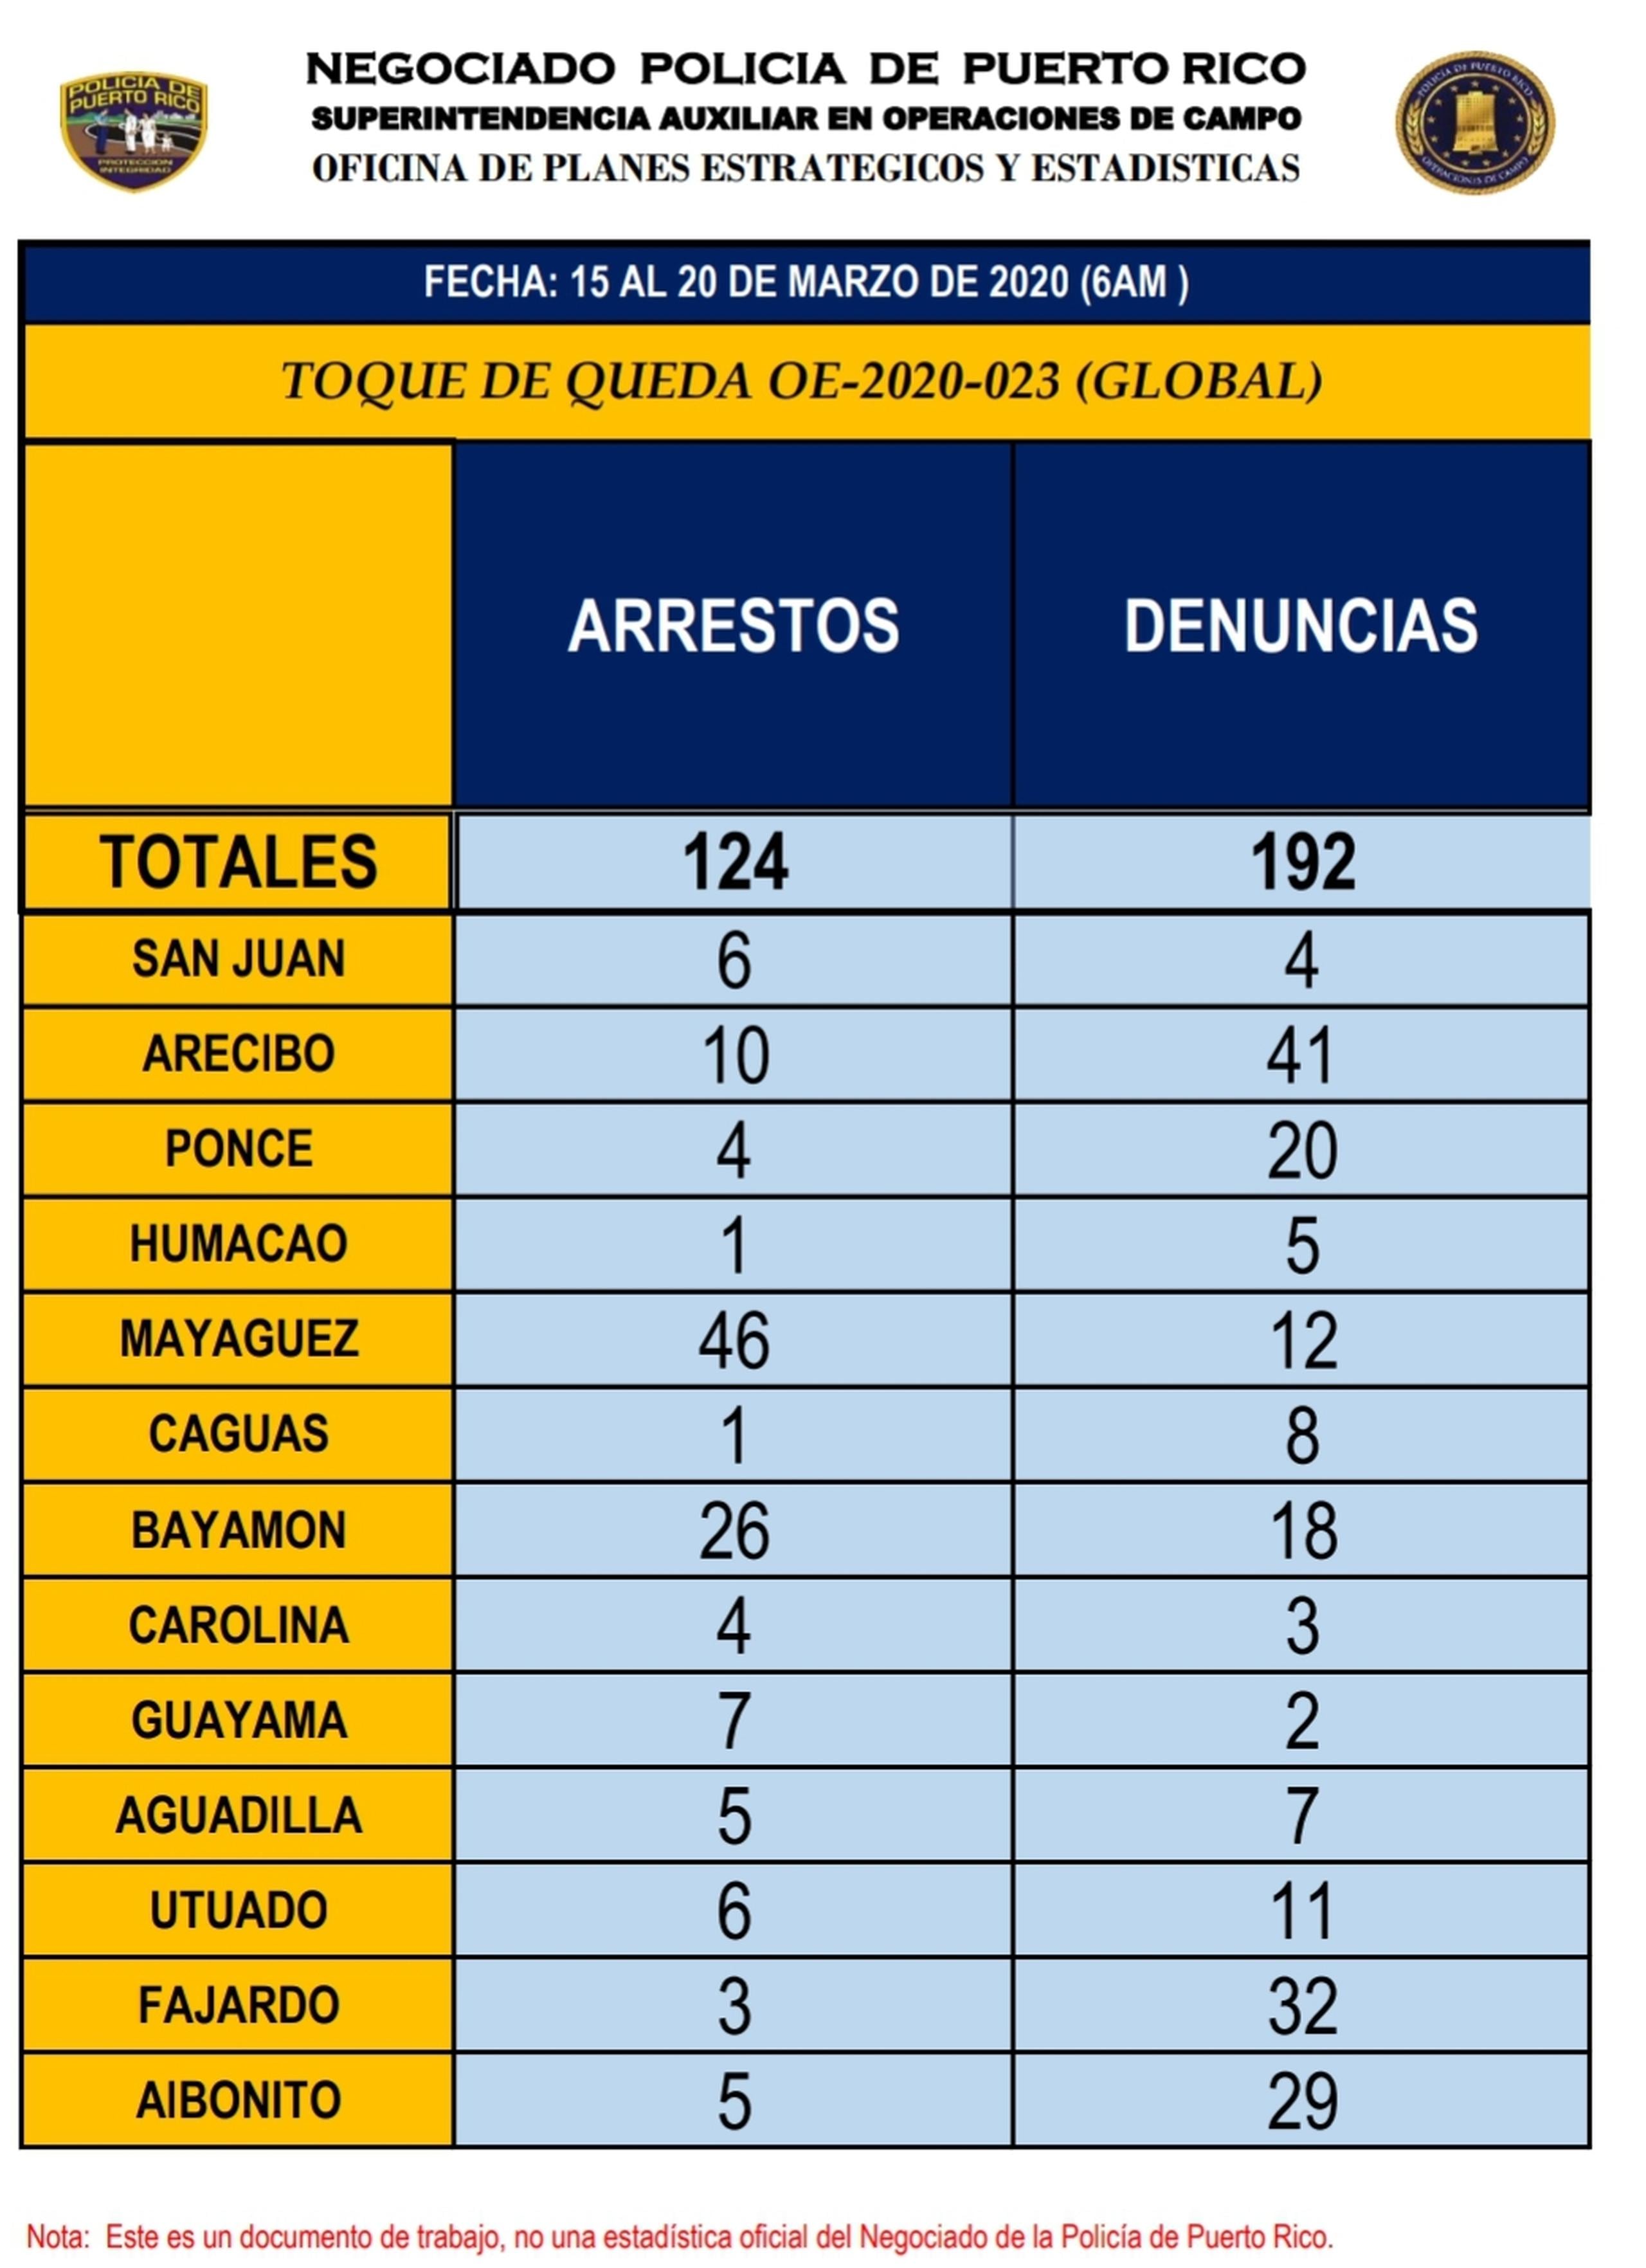 Según las estadísticas del Negociado de la Policía que hasta el presente se han arrestado 124 personas por violación al toque de queda,